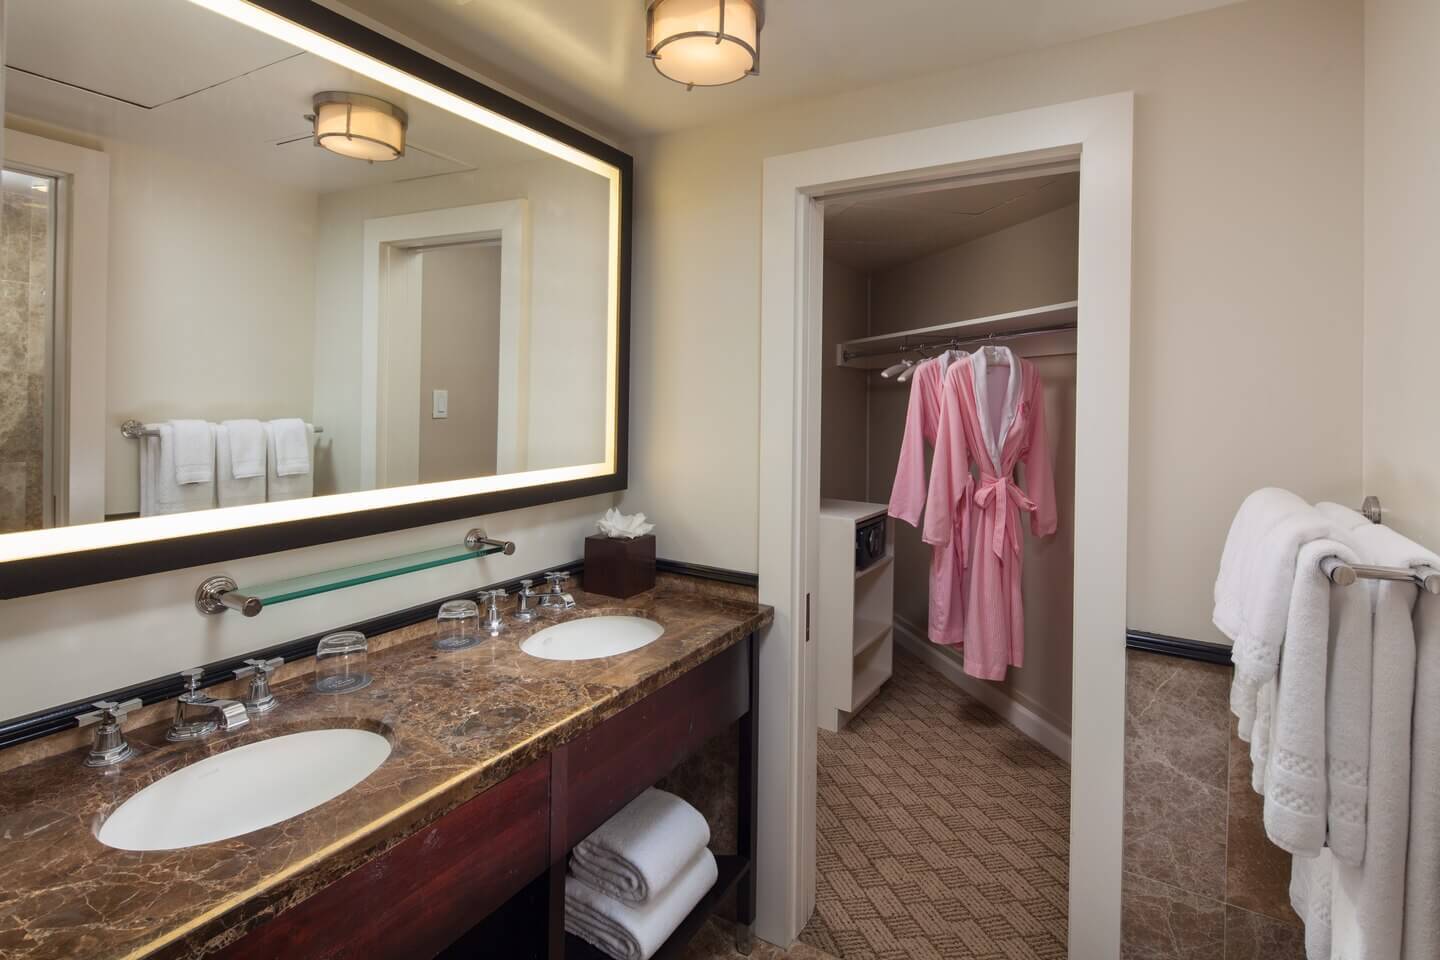 ロイヤルハワイアン「ヒストリックルーム」のバスルームと、ピンク色のバスローブの写真